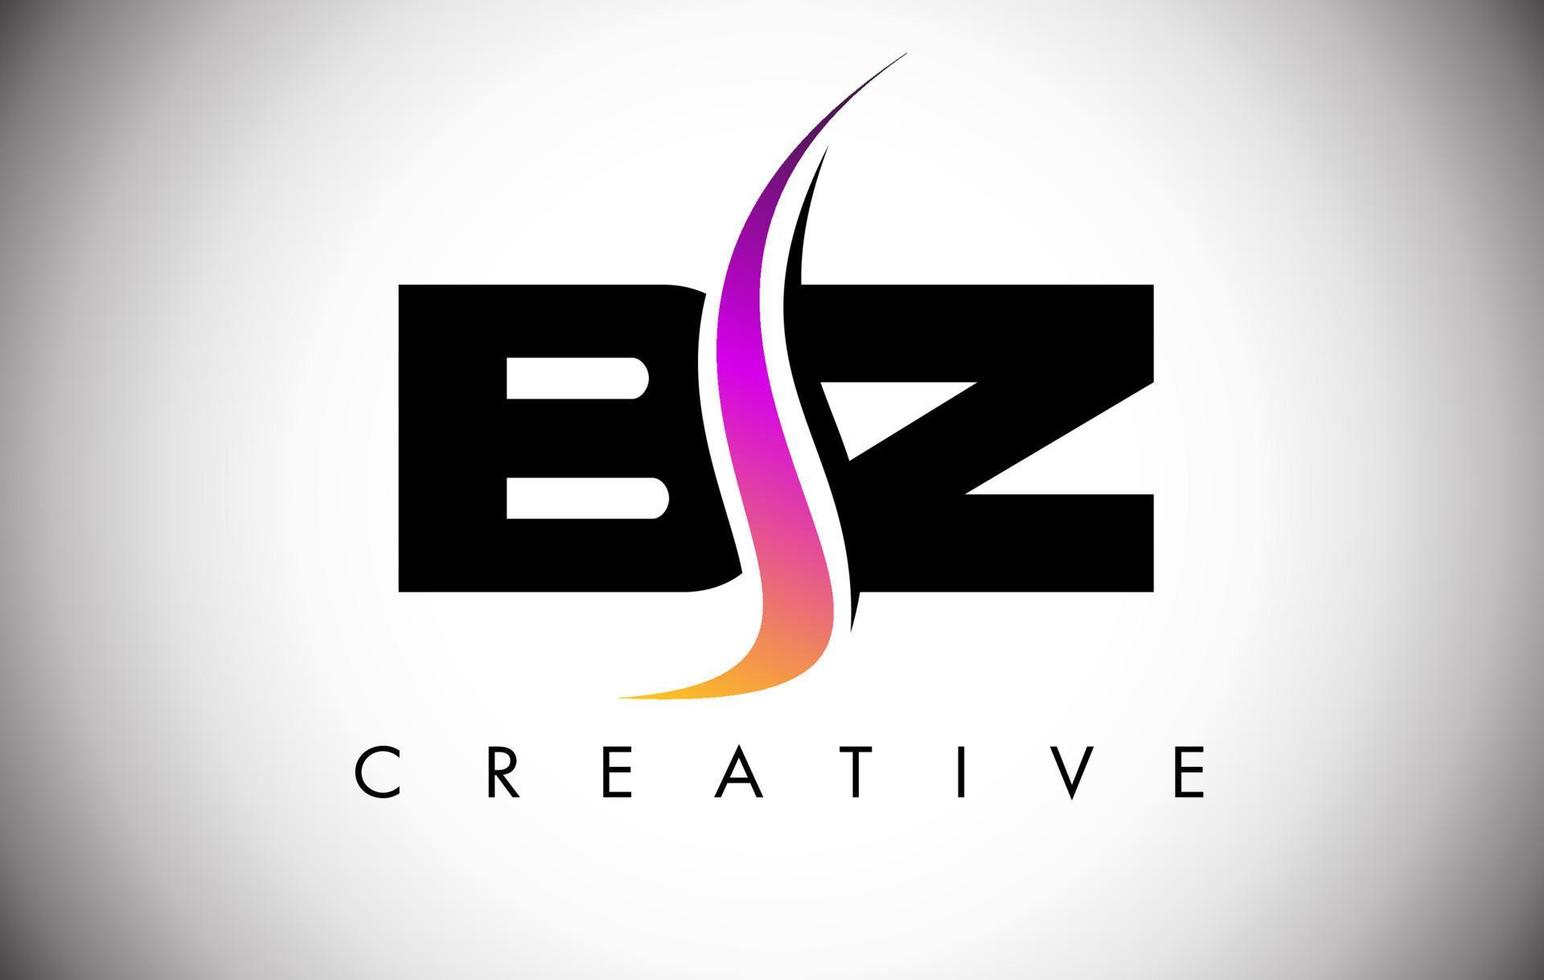 création de logo de lettre bz avec shoosh créatif et look moderne vecteur